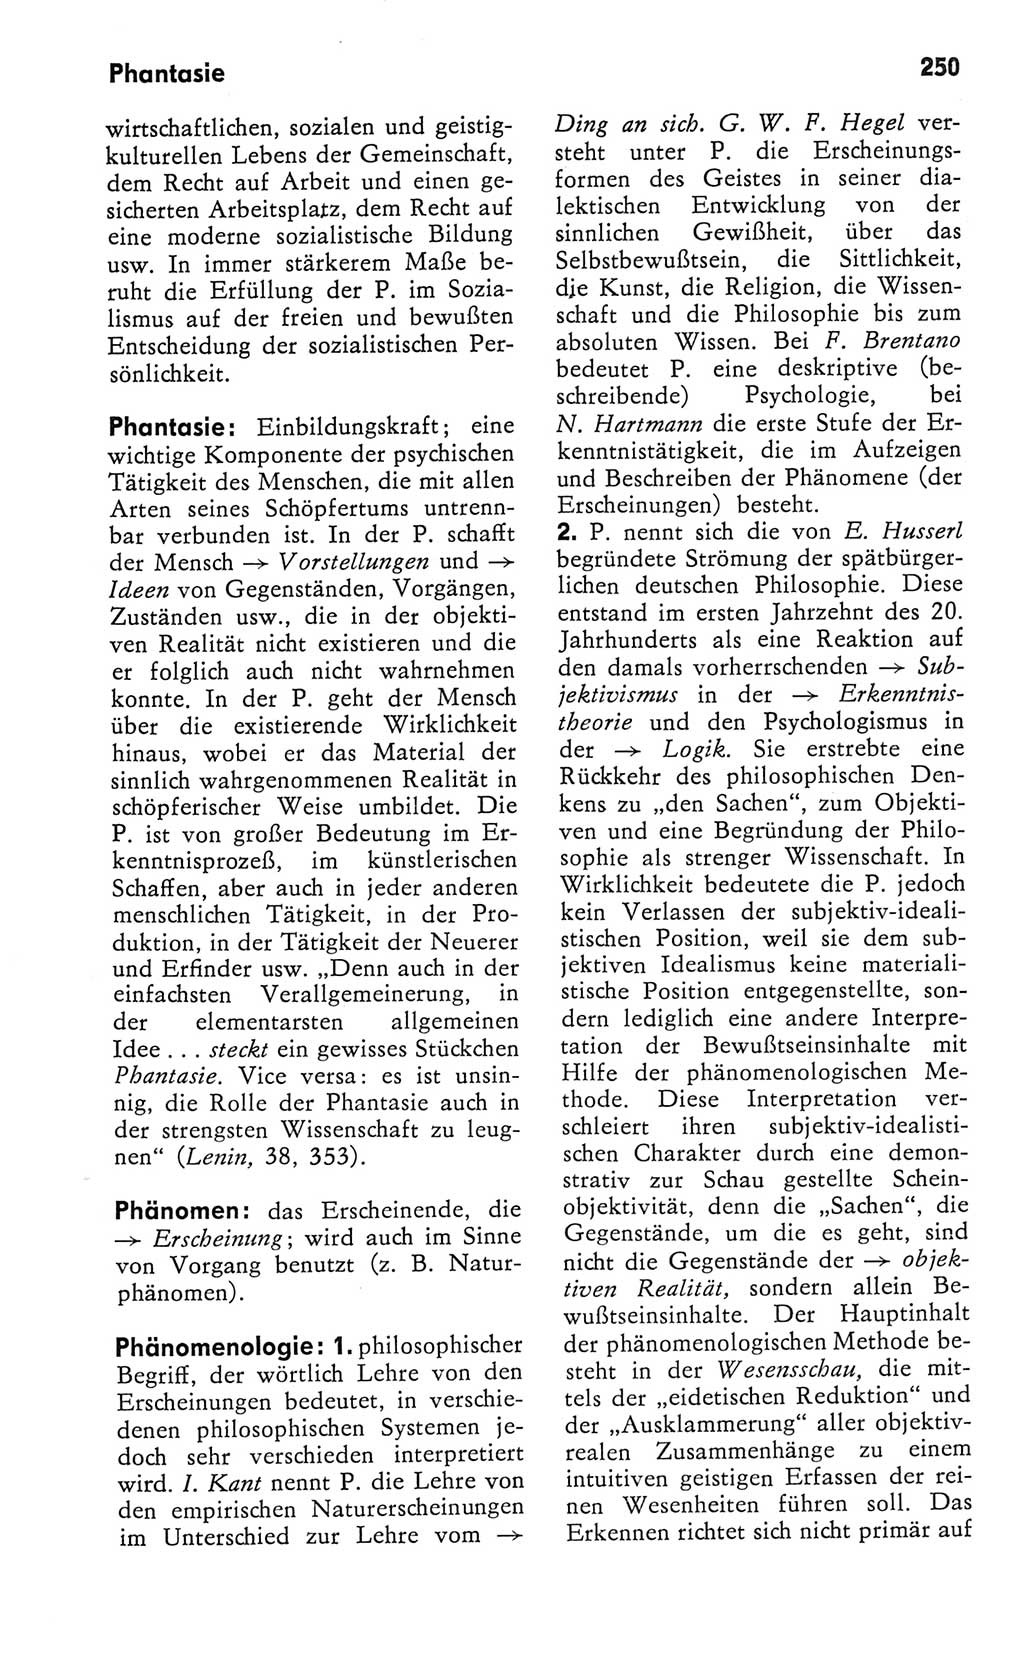 Kleines Wörterbuch der marxistisch-leninistischen Philosophie [Deutsche Demokratische Republik (DDR)] 1982, Seite 250 (Kl. Wb. ML Phil. DDR 1982, S. 250)